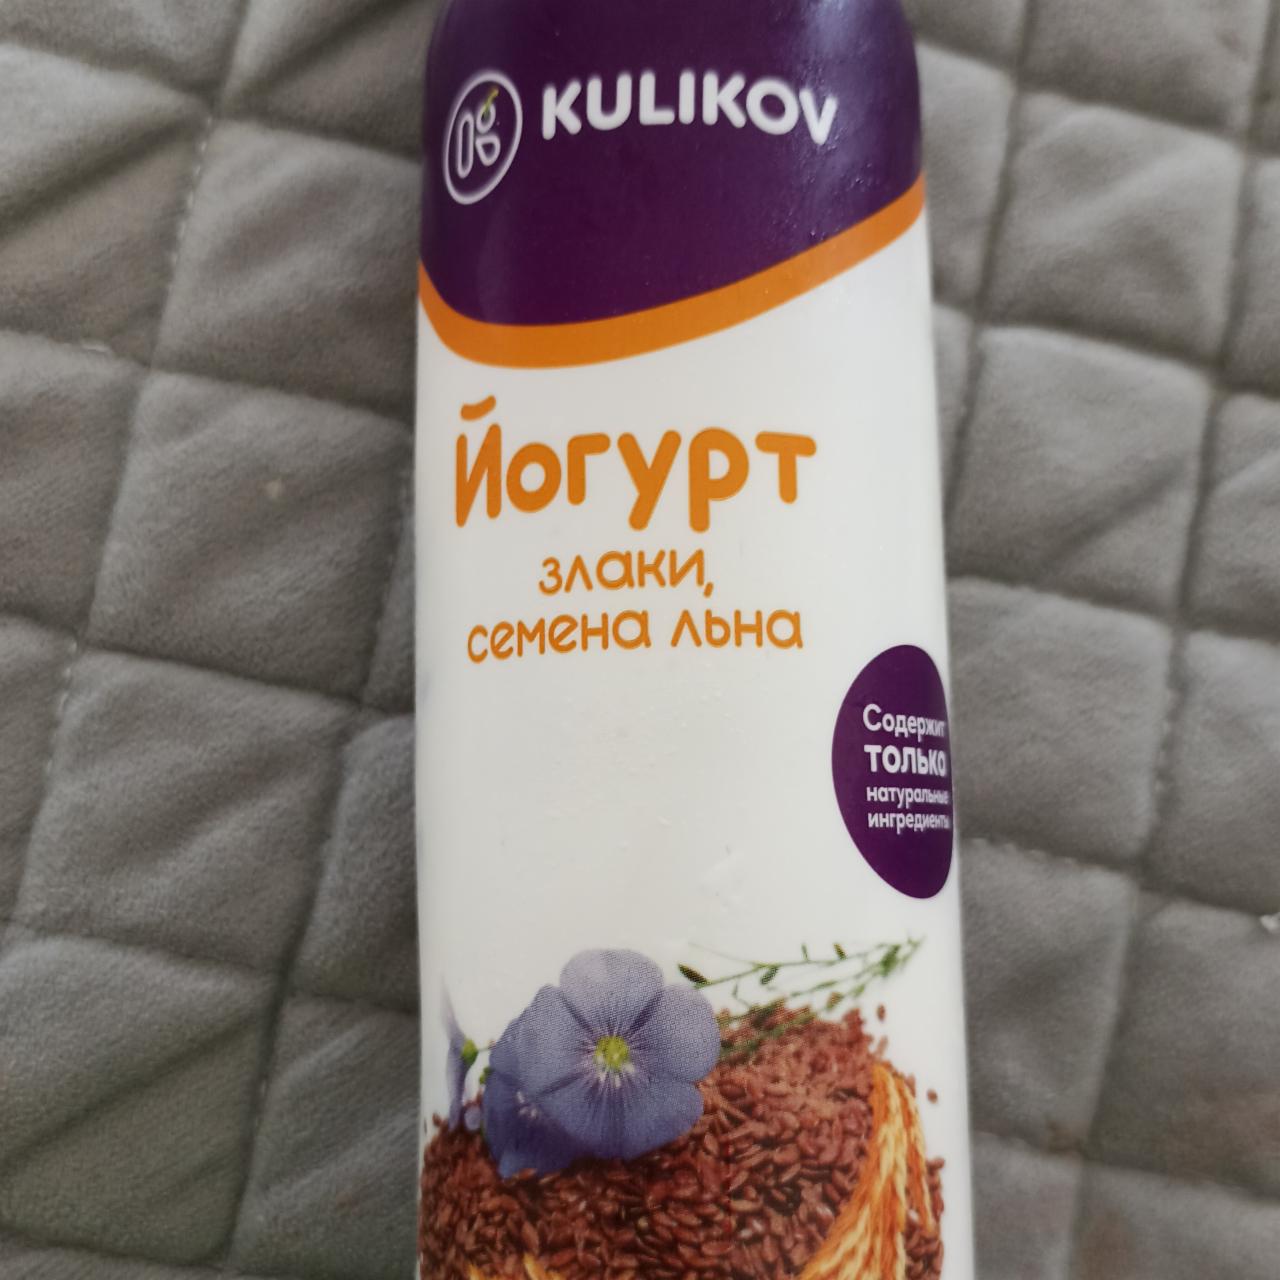 Фото - йогурт питьевой злаки-семена льна Kulikov